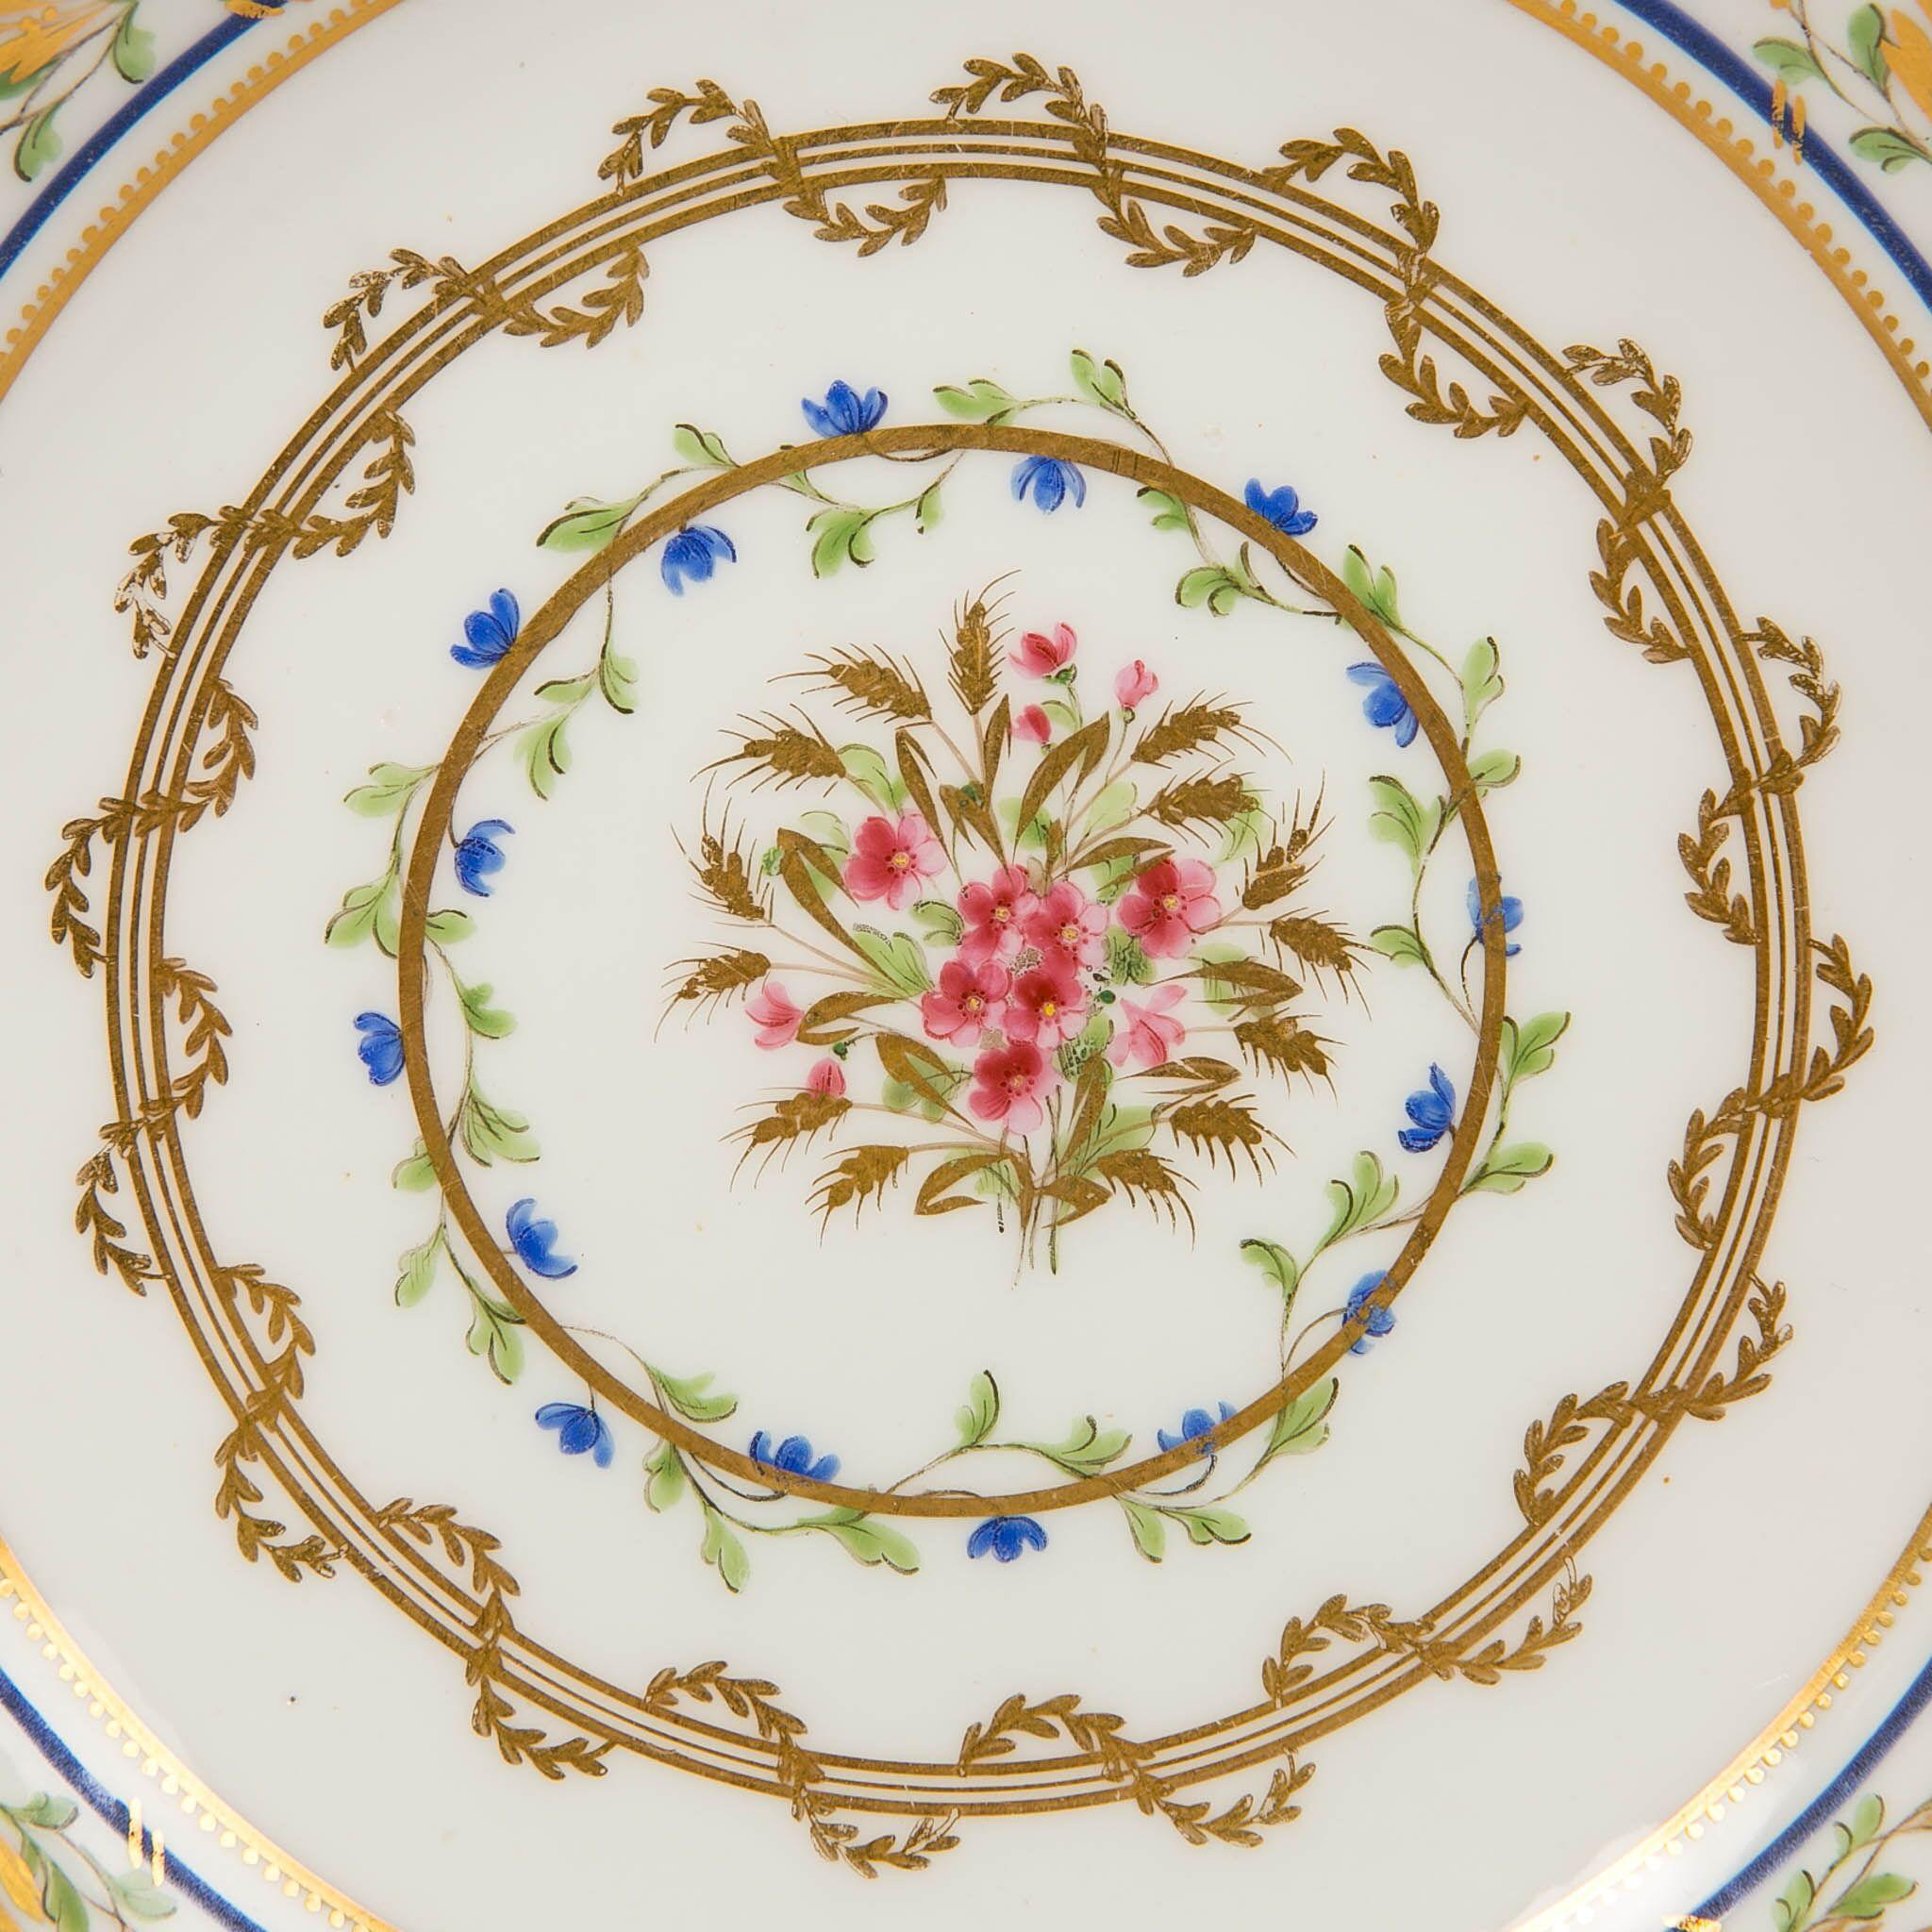 Wir freuen uns:: diese schöne:: handbemalte Sèvres-Porzellanschale anbieten zu können:: die für den exquisiten französischen Stil des 18. Jahrhunderts steht. Die Farben und das Design vermitteln ein Gefühl von Bewegung:: Intensität und Leben. Die